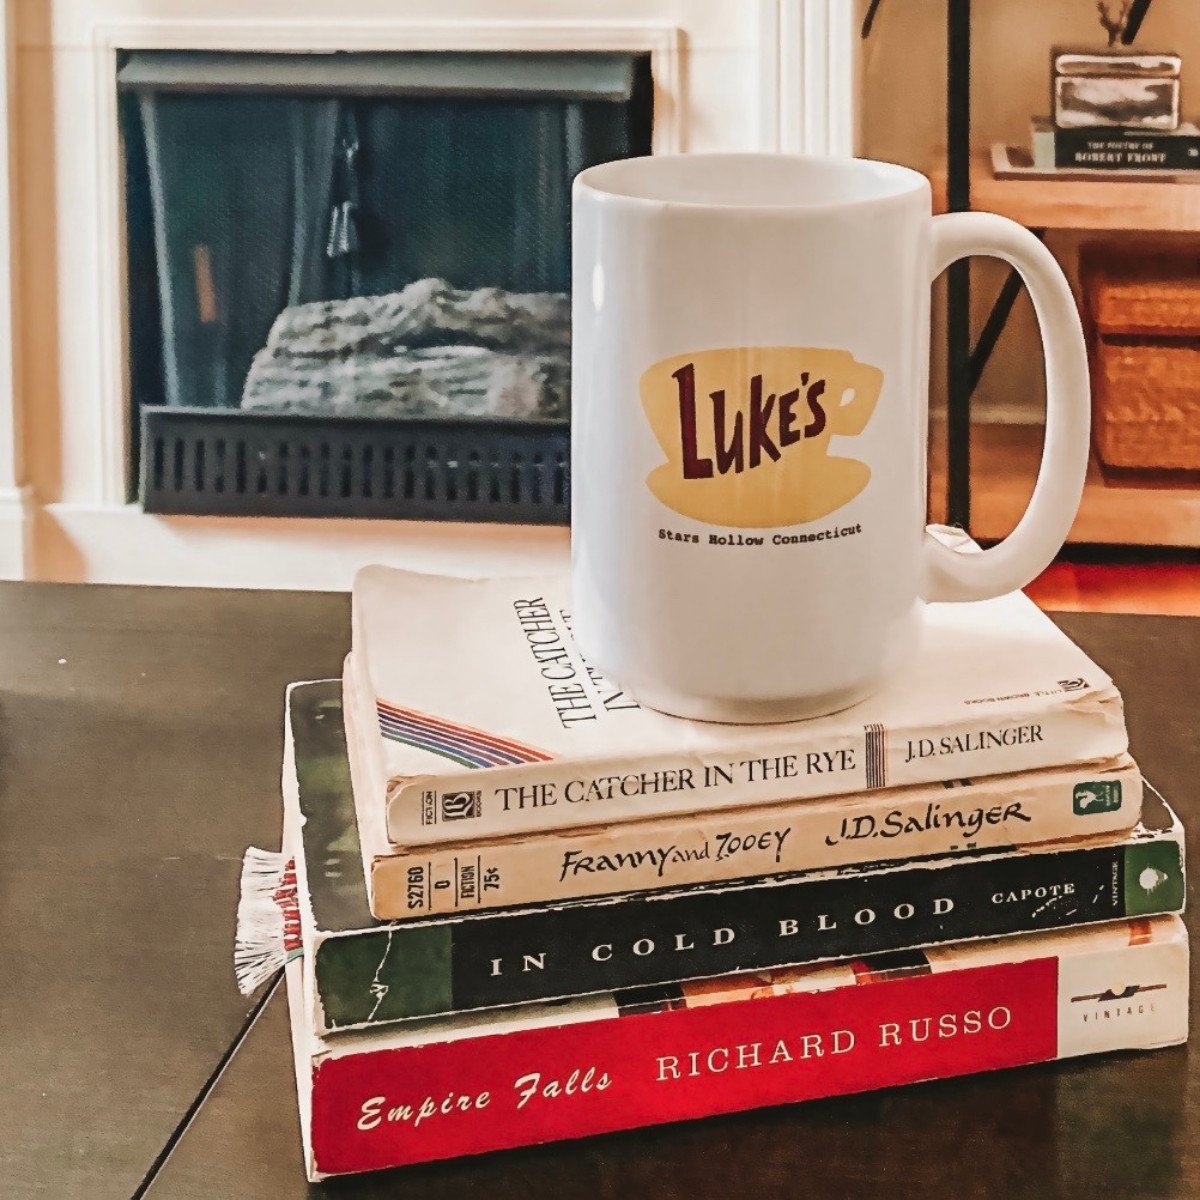 Luke's Diner mug and books